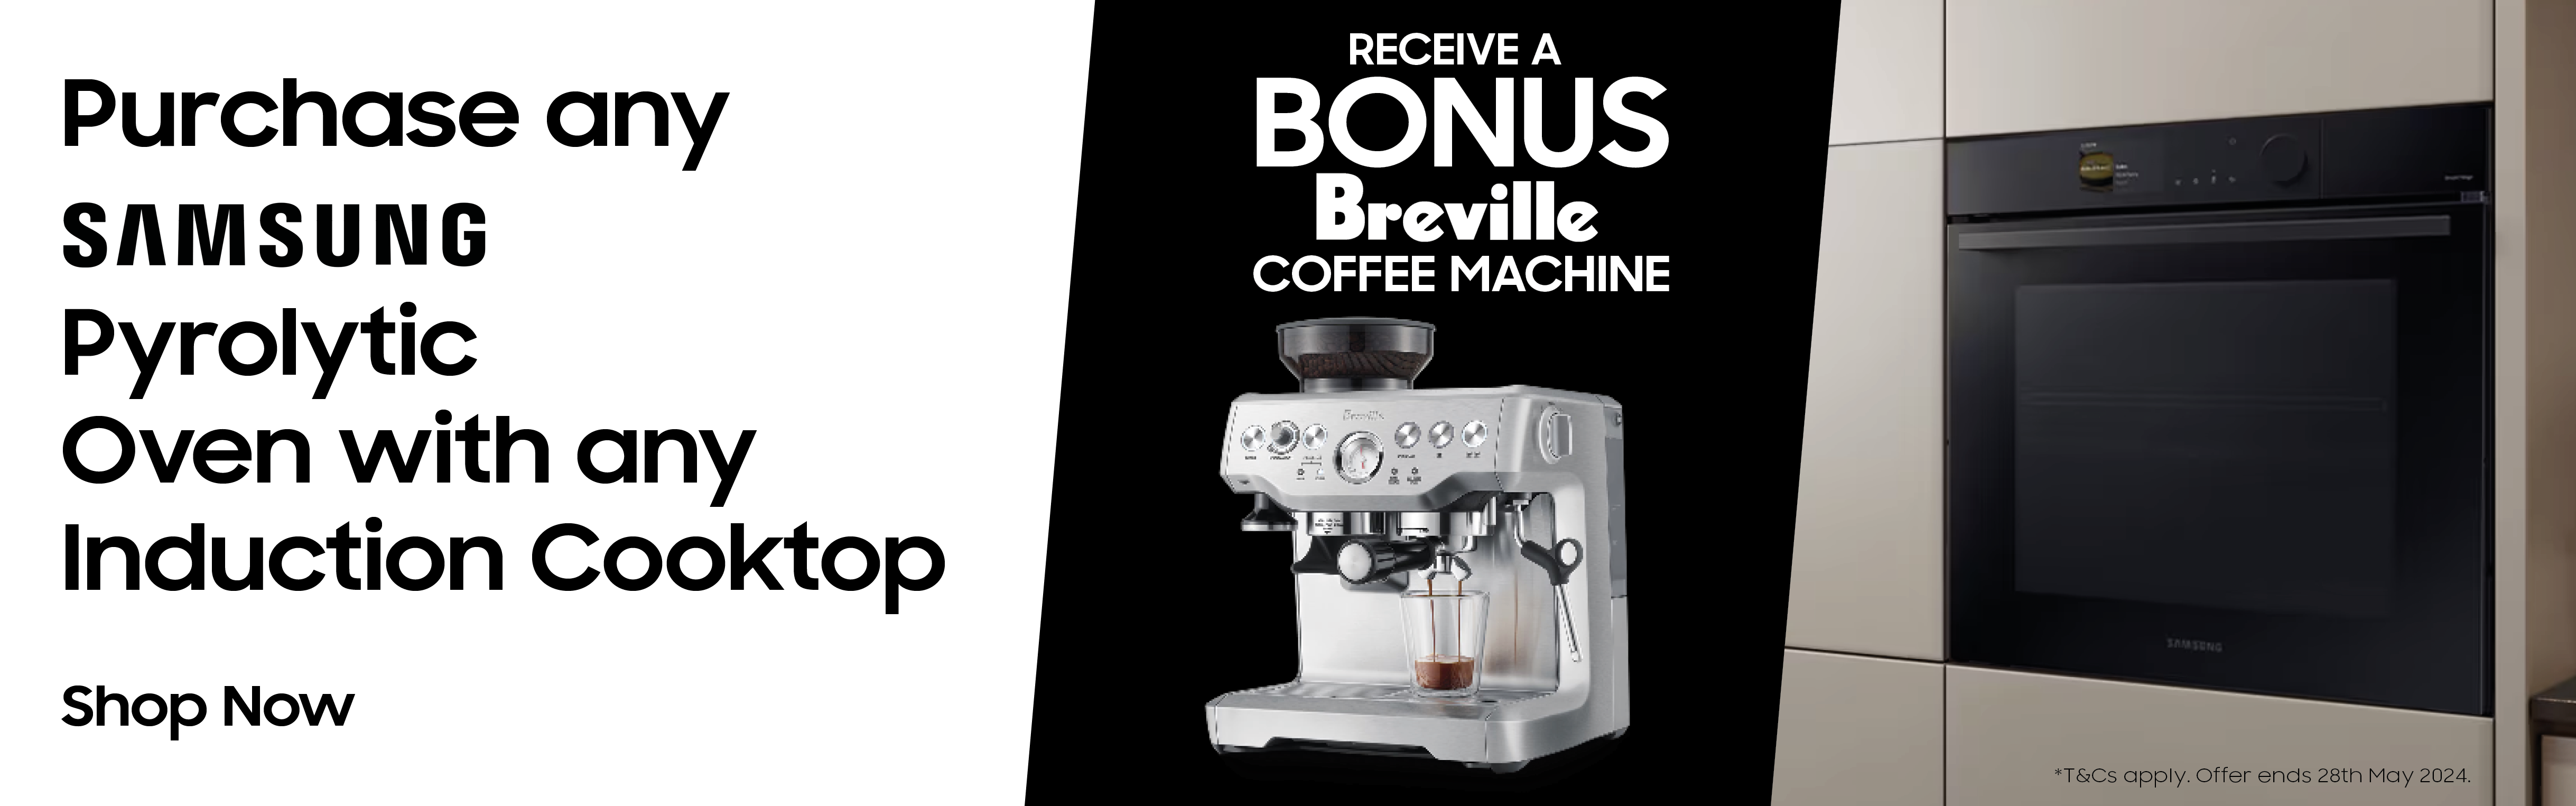 Smasung bonus coffee machine promo2